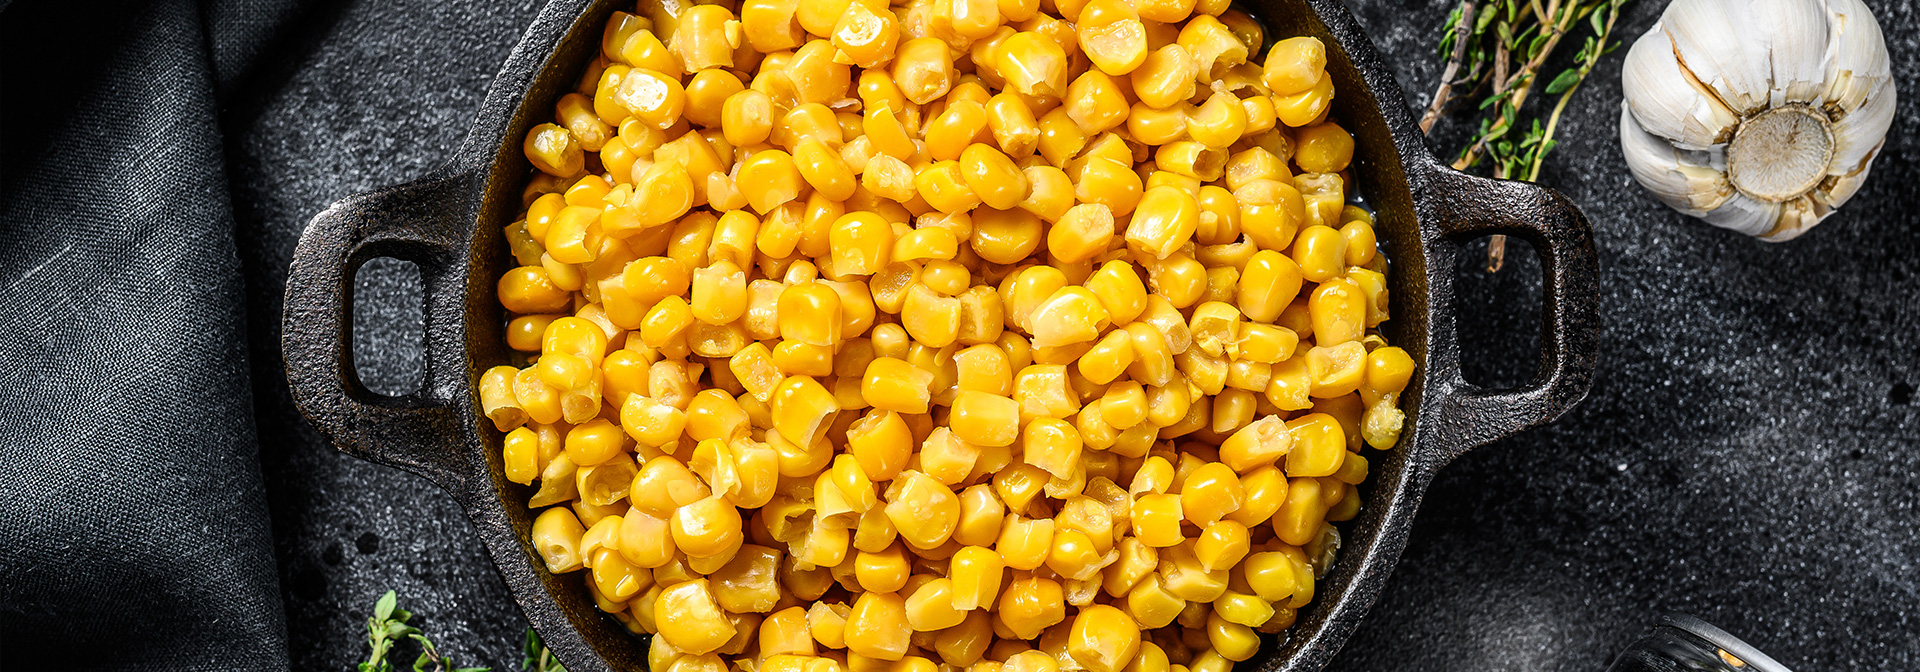 Kernel corn wholesale by KALLAS INC.